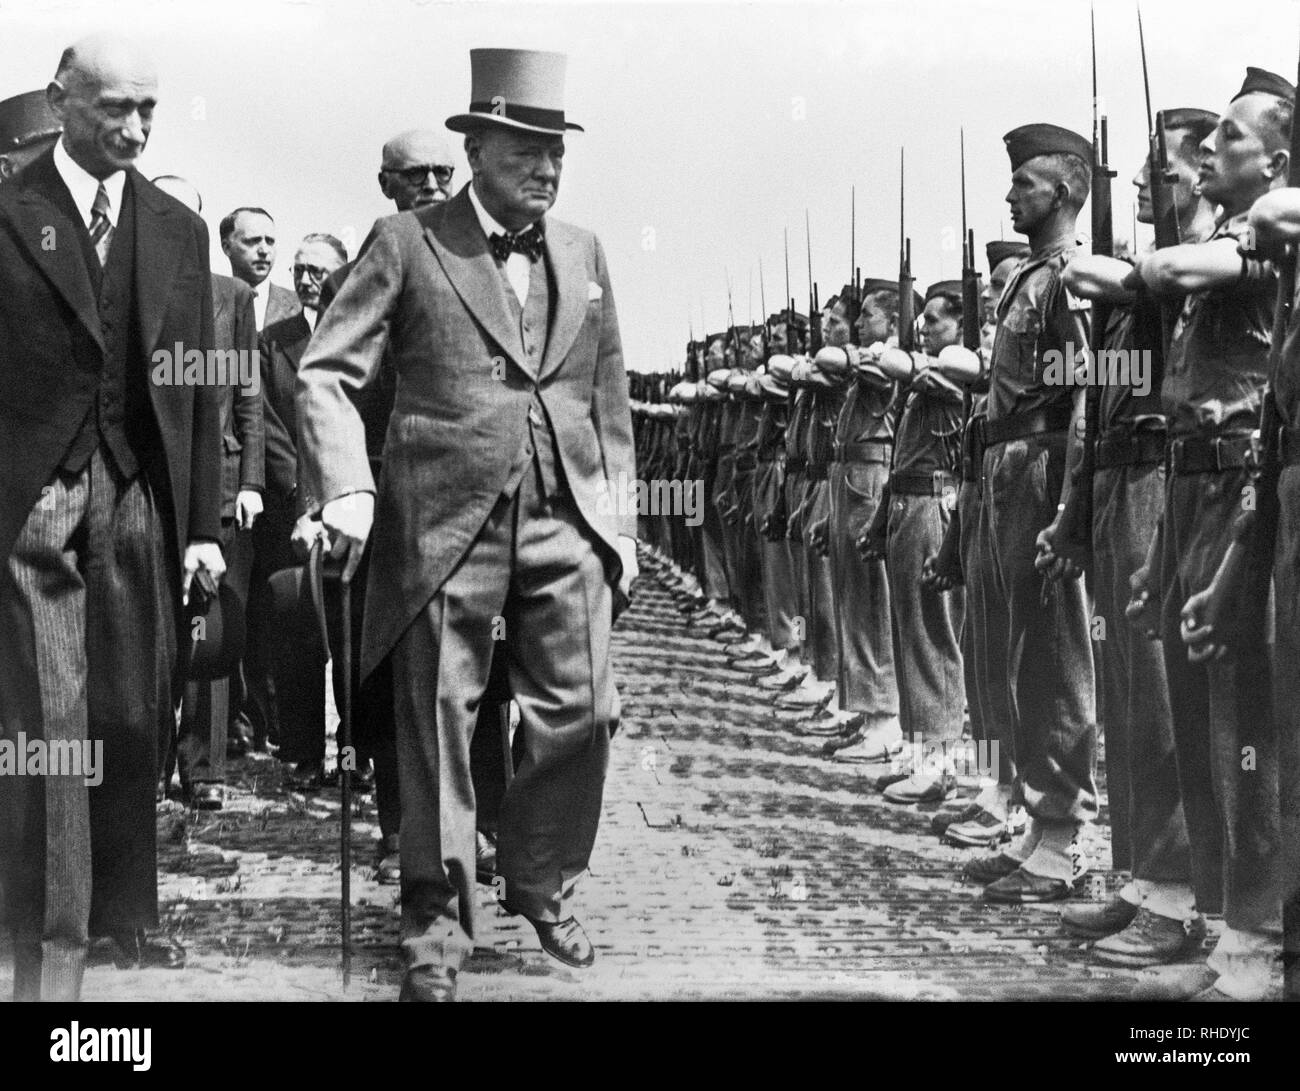 Sir. Winston Churchill, der ehemalige britische Premierminister, Überprüfen der Truppen in Metz, Frankreich mit dem französischen Staatsmann Robert Schuman, ein Führer in der europäischen Integration nach dem Zweiten Weltkrieg, am 17. Juli 1946. Stockfoto